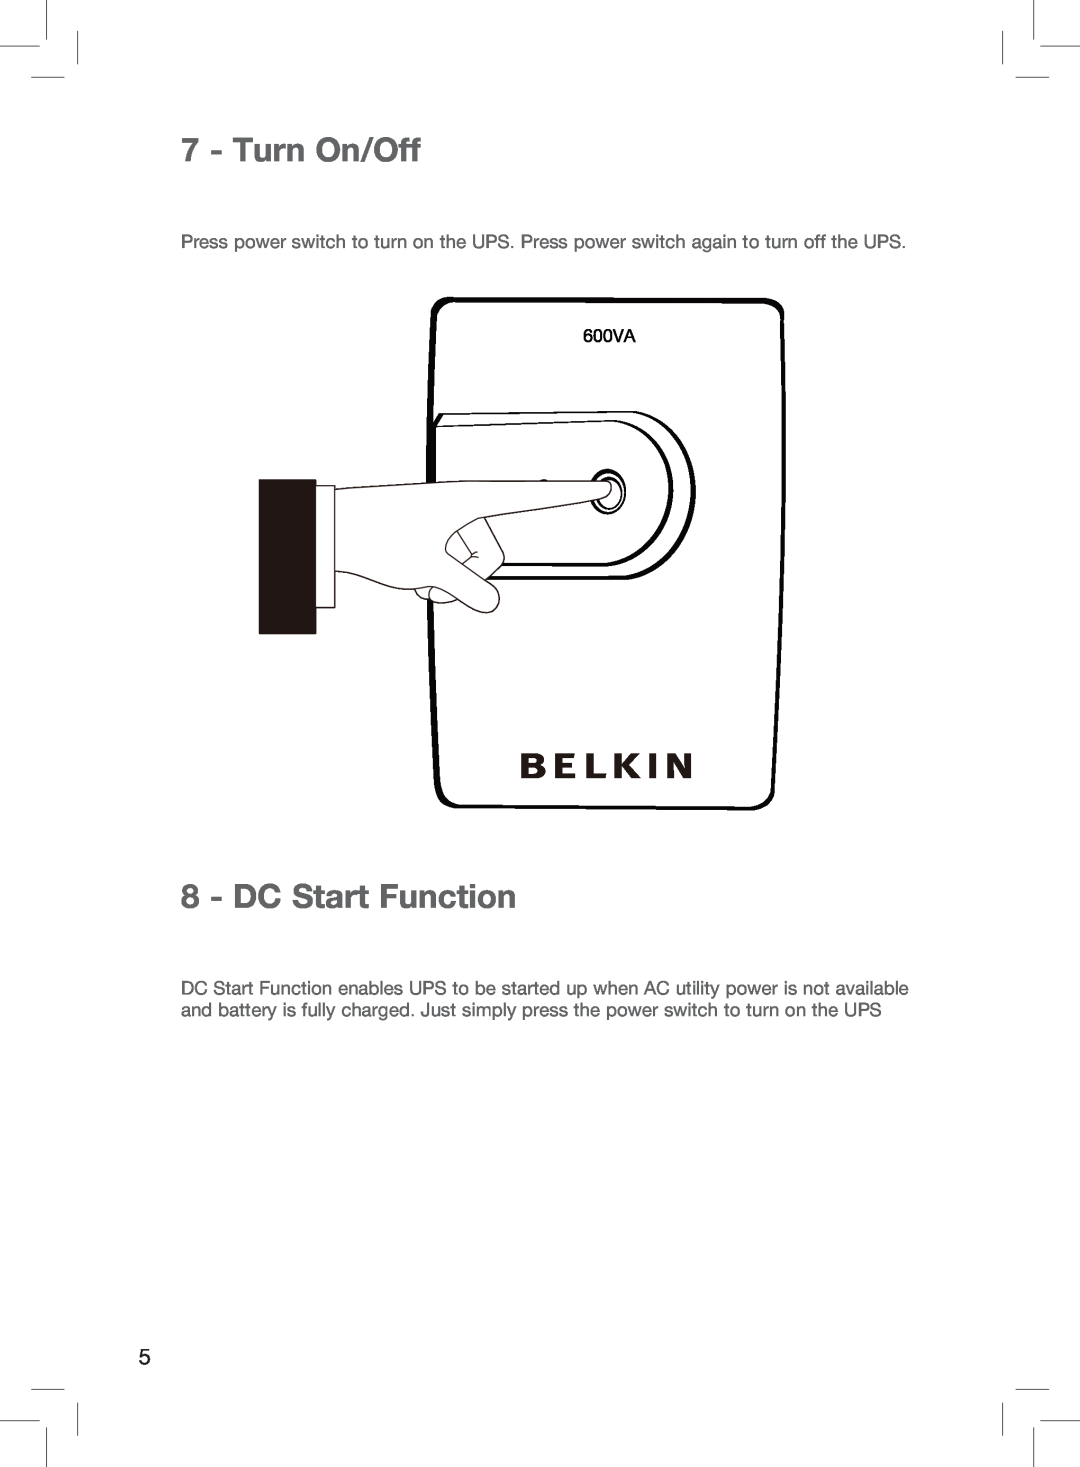 Belkin F6U600AU manual Turn On/Off, DC Start Function 